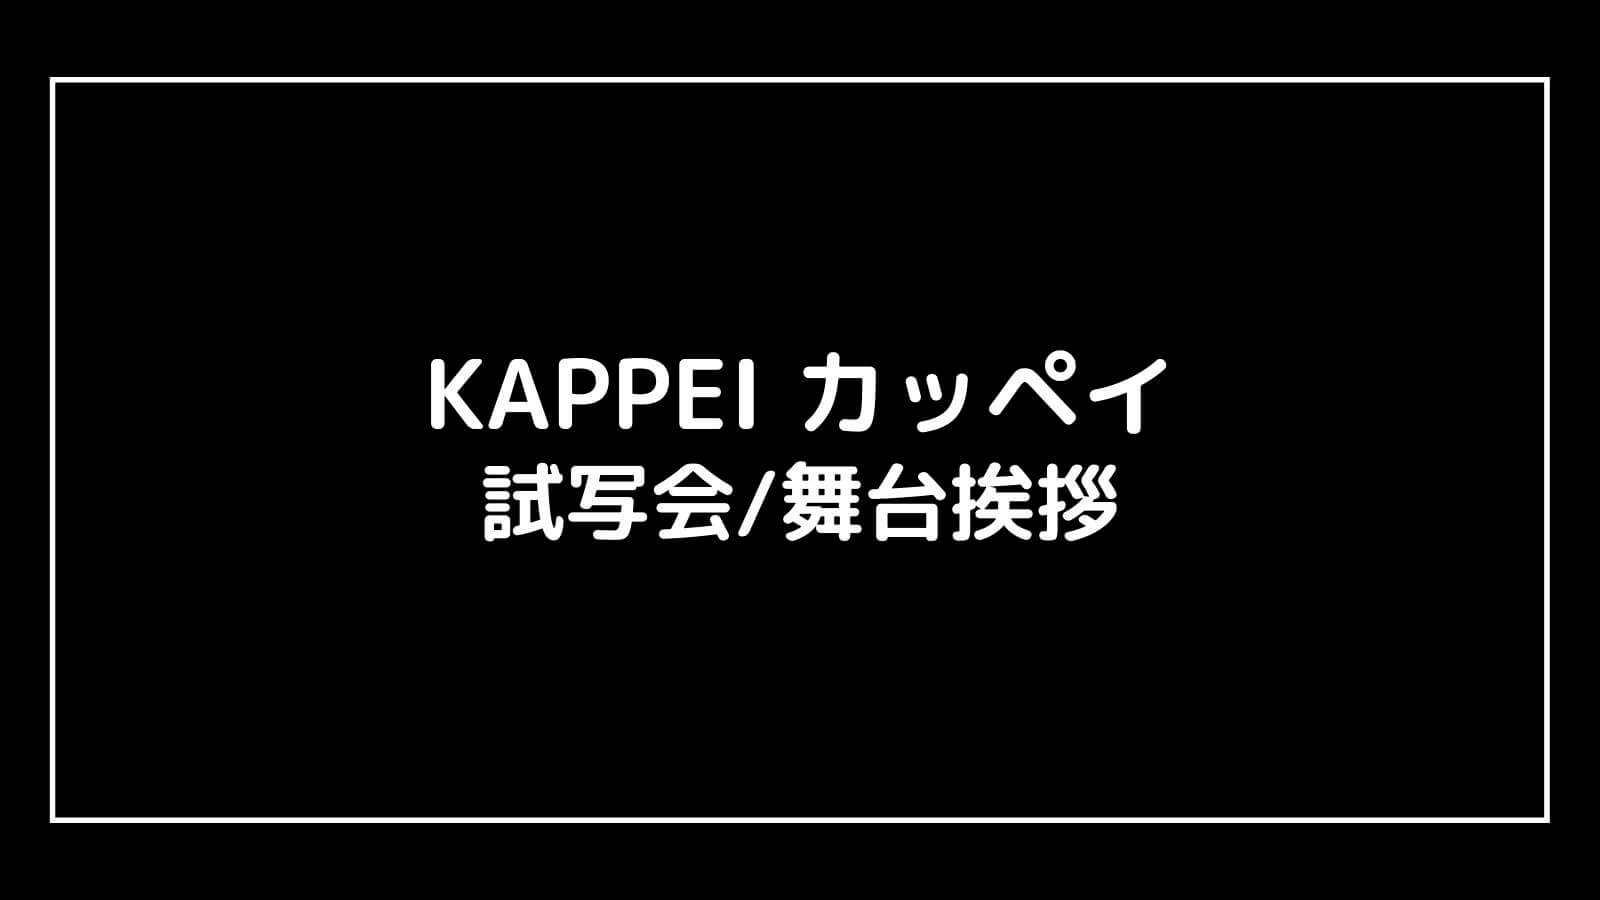 映画『KAPPEI カッペイ』の試写会と舞台挨拶ライブビューイング情報